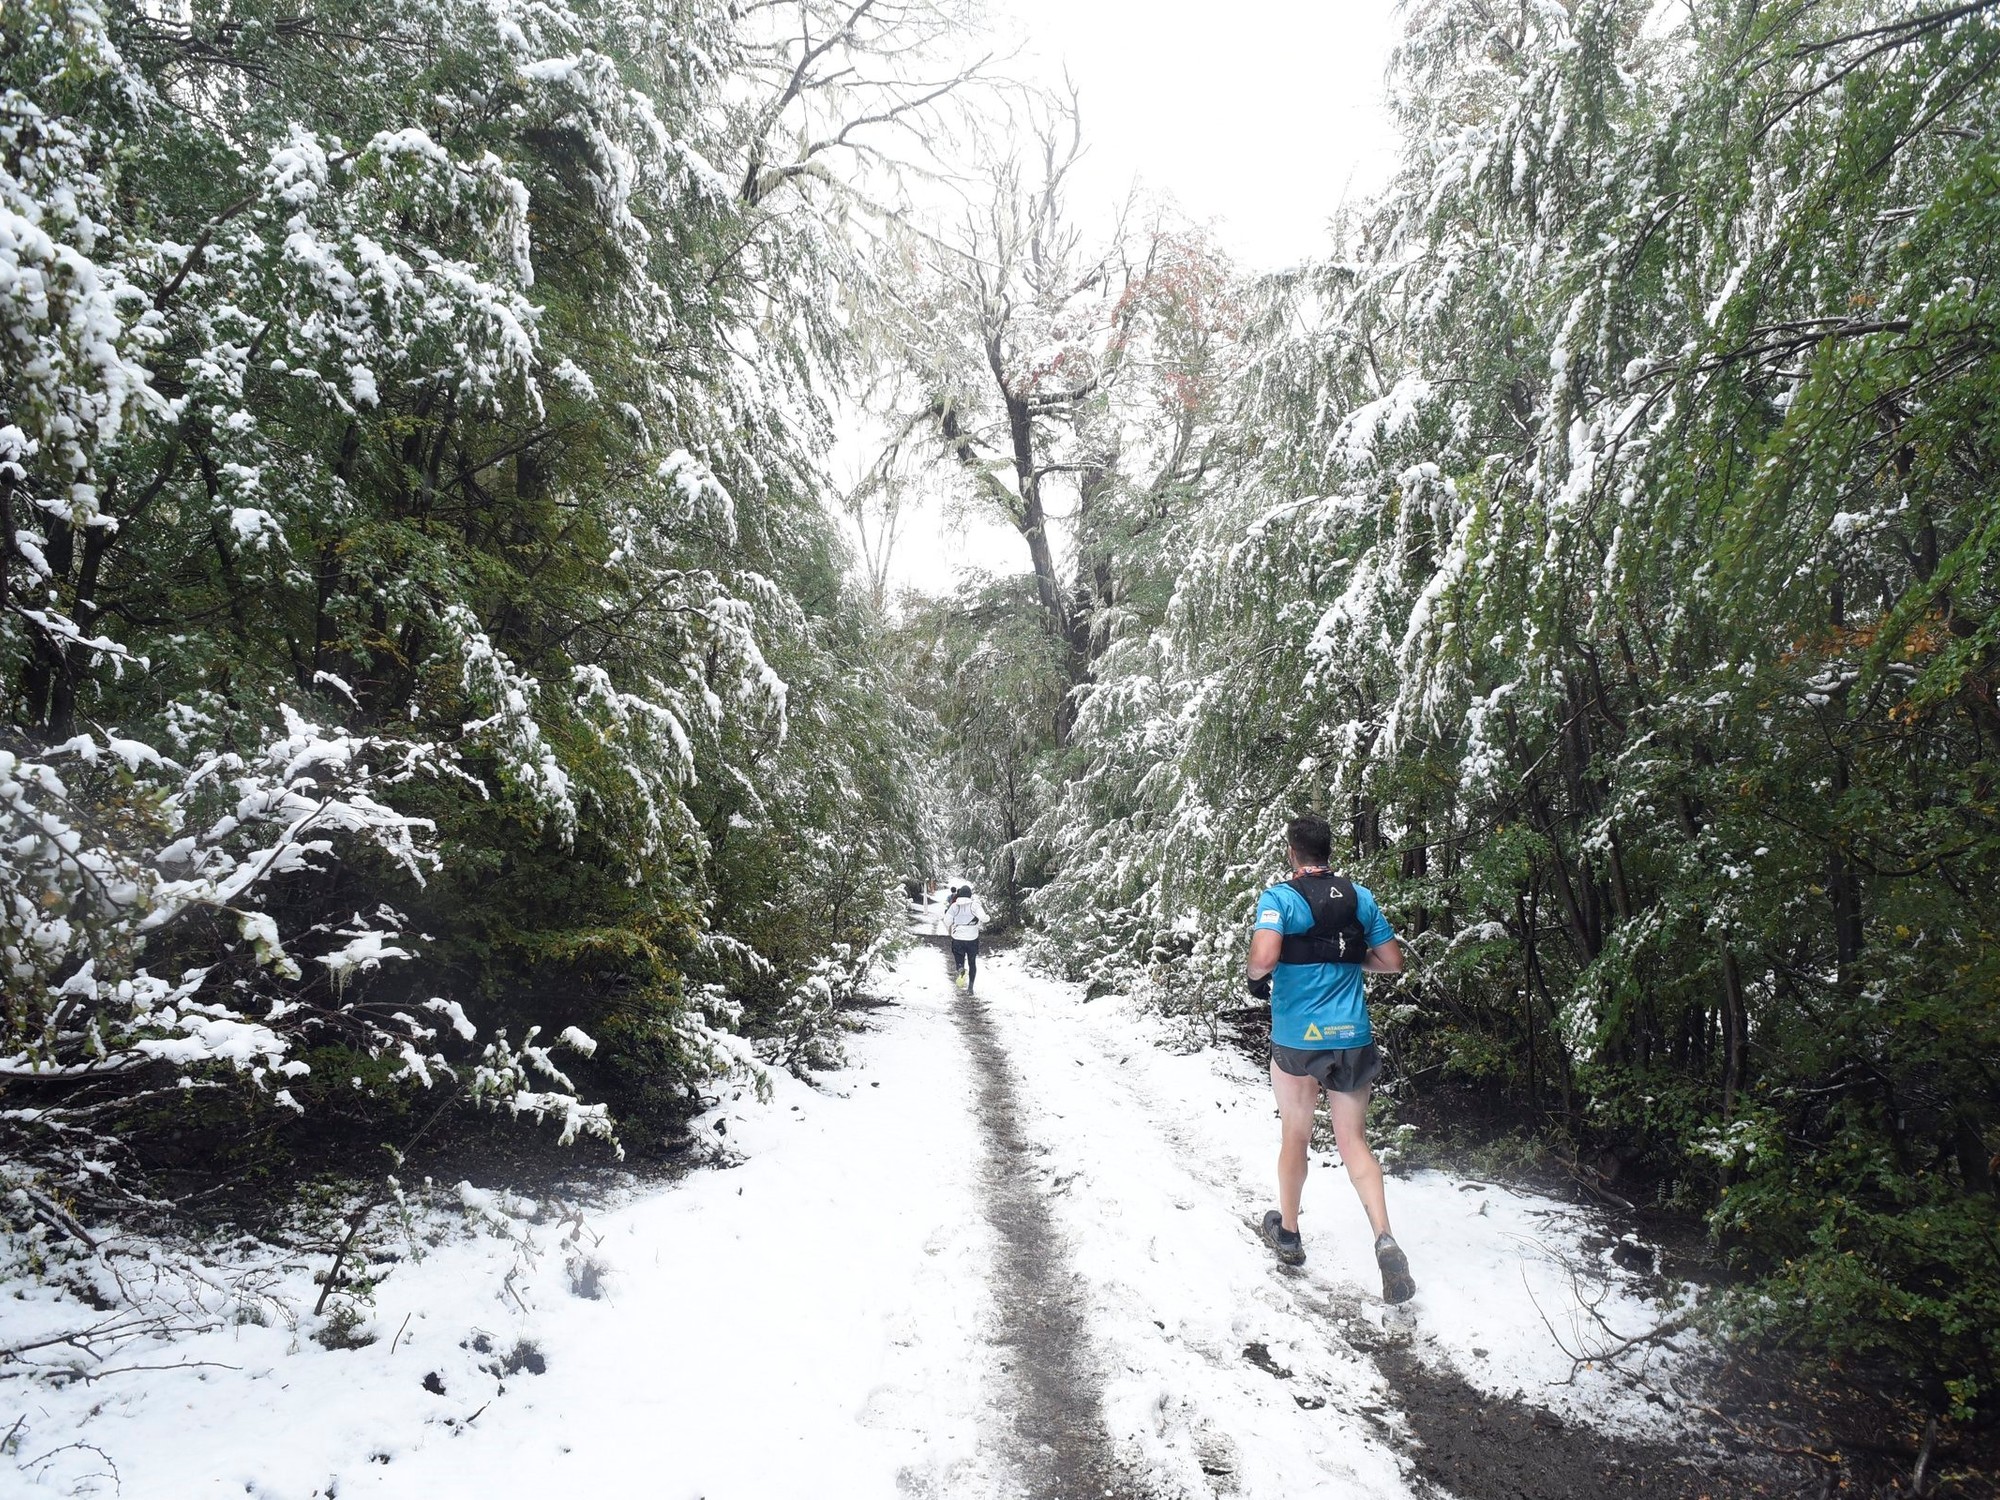 Patagonia Run, desde adentro: la felicidad de correr en la nieve, como si fuera un viaje de egresados a Narnia